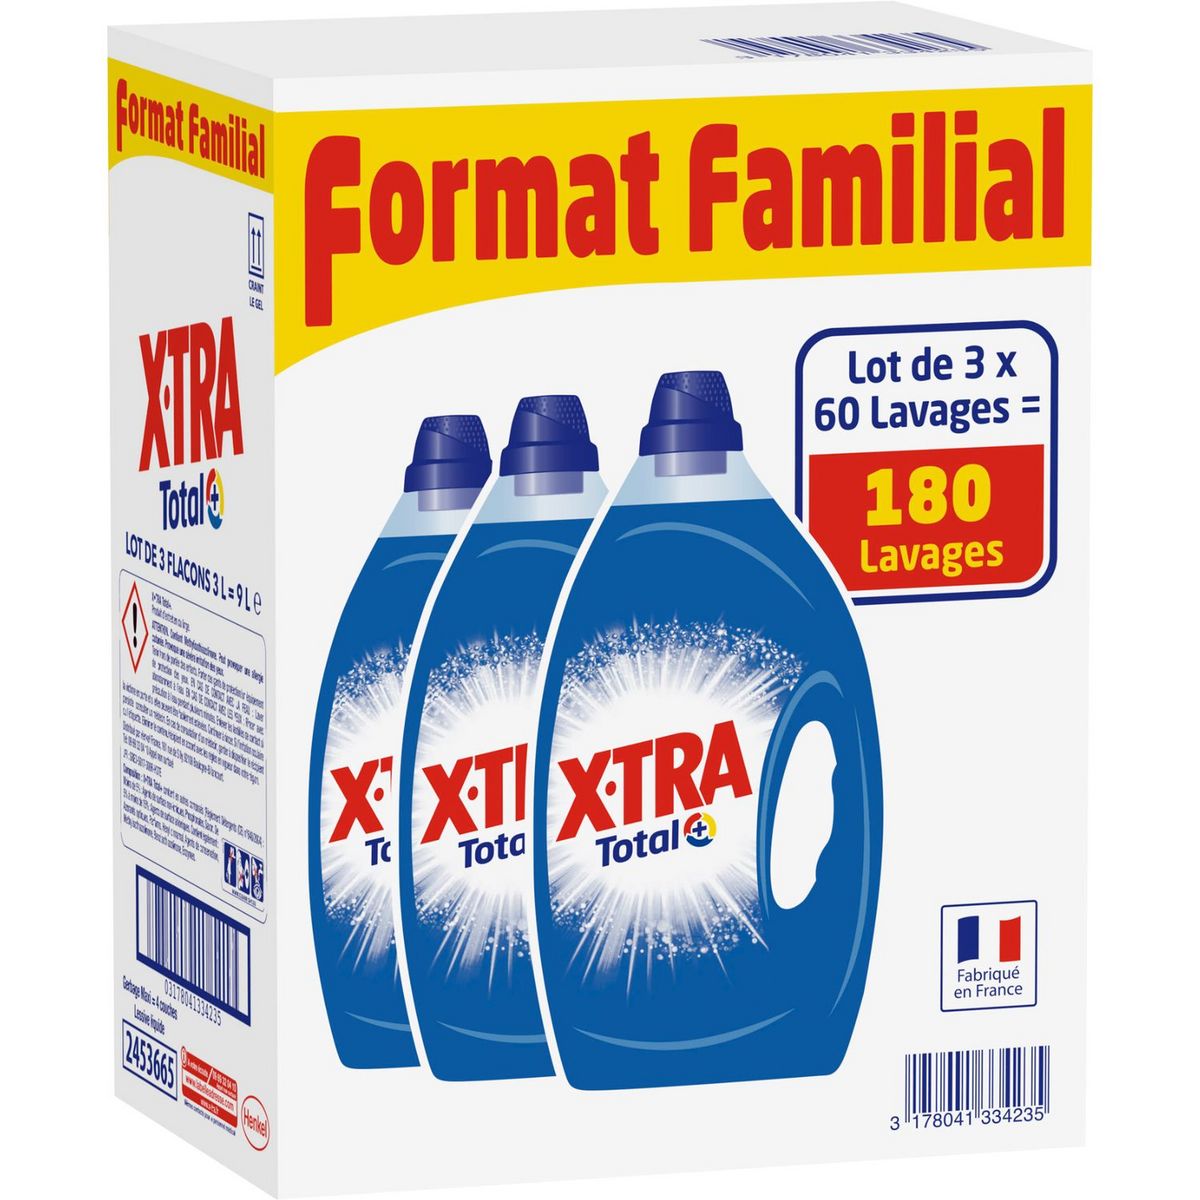 EXTRA Xtra lessive diluée total 90 lavages 3x3l lot familial pas cher 